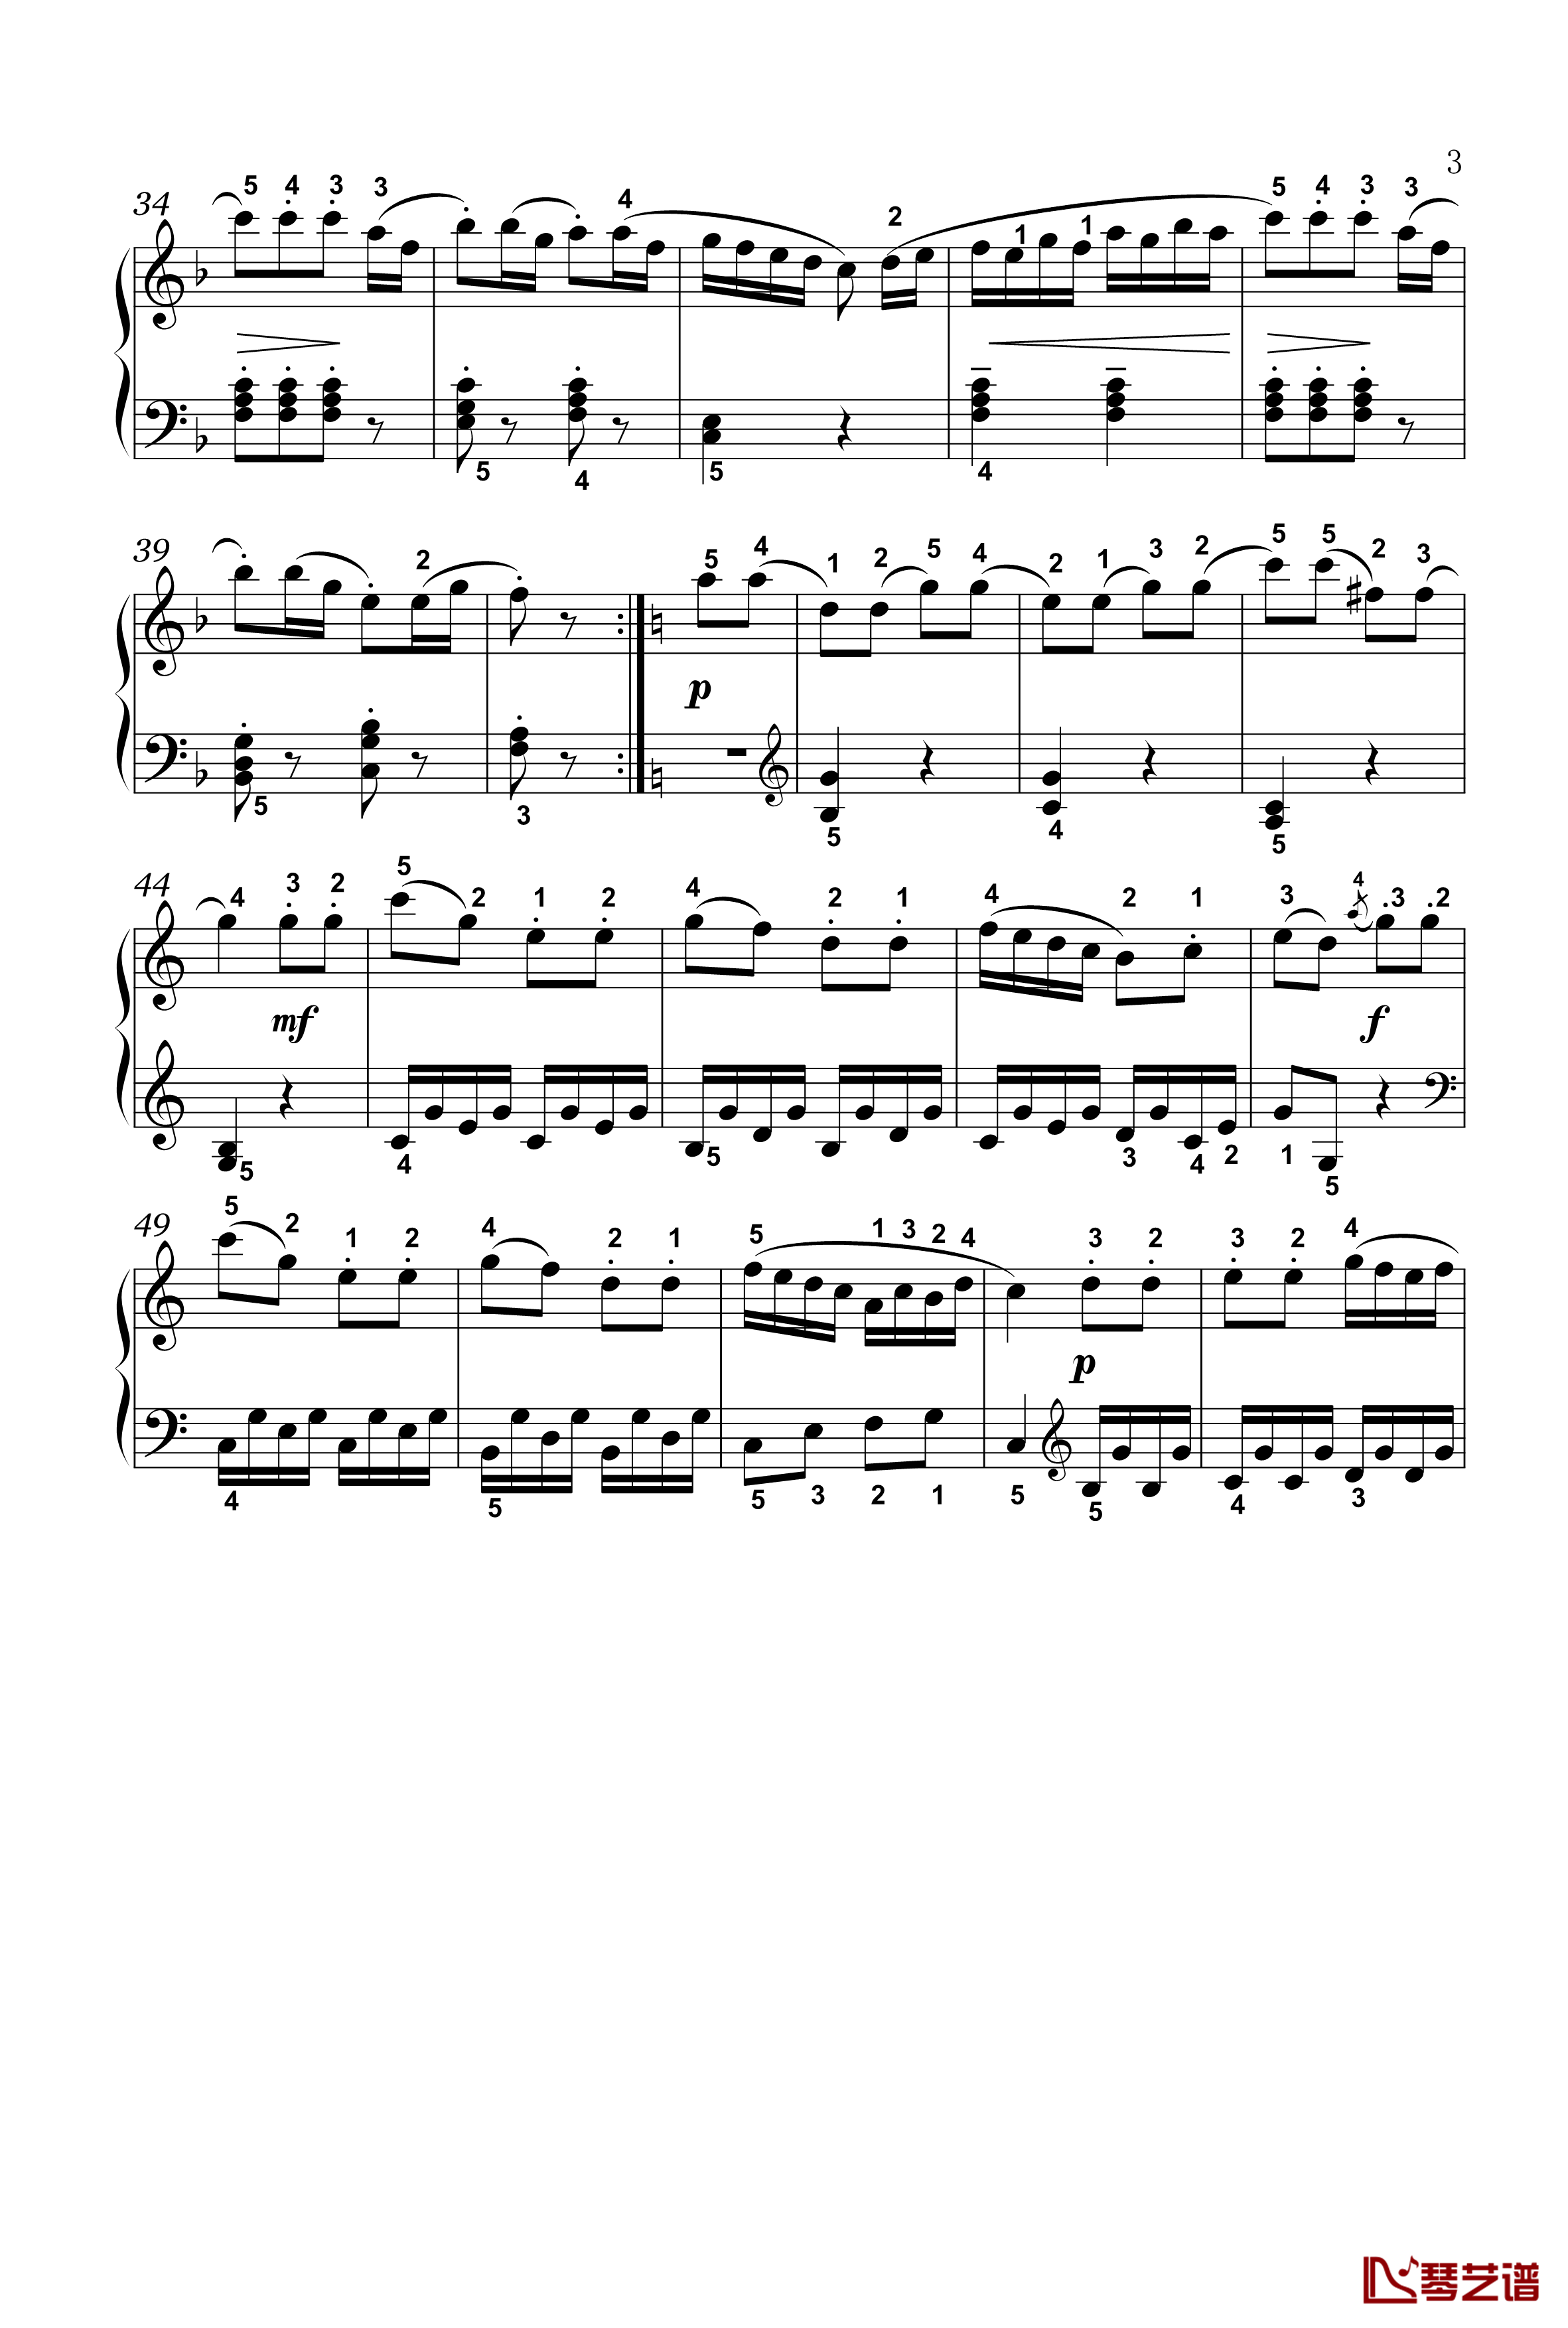 回旋曲钢琴谱-四级-普莱耶尔3